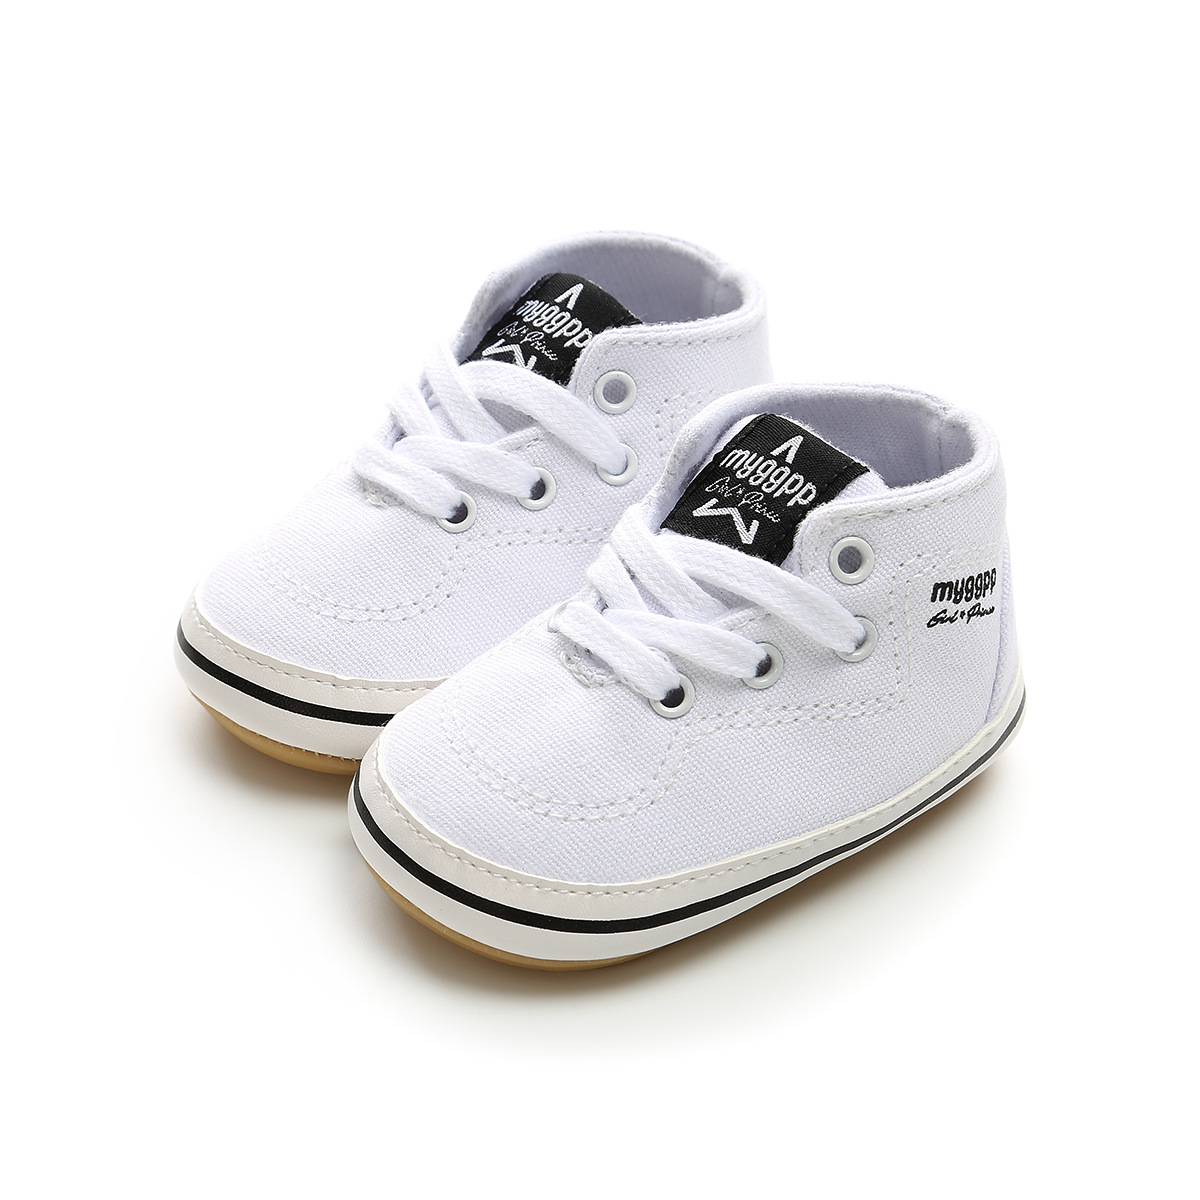 Chaussures bébé en coton - Ref 3436710 Image 200